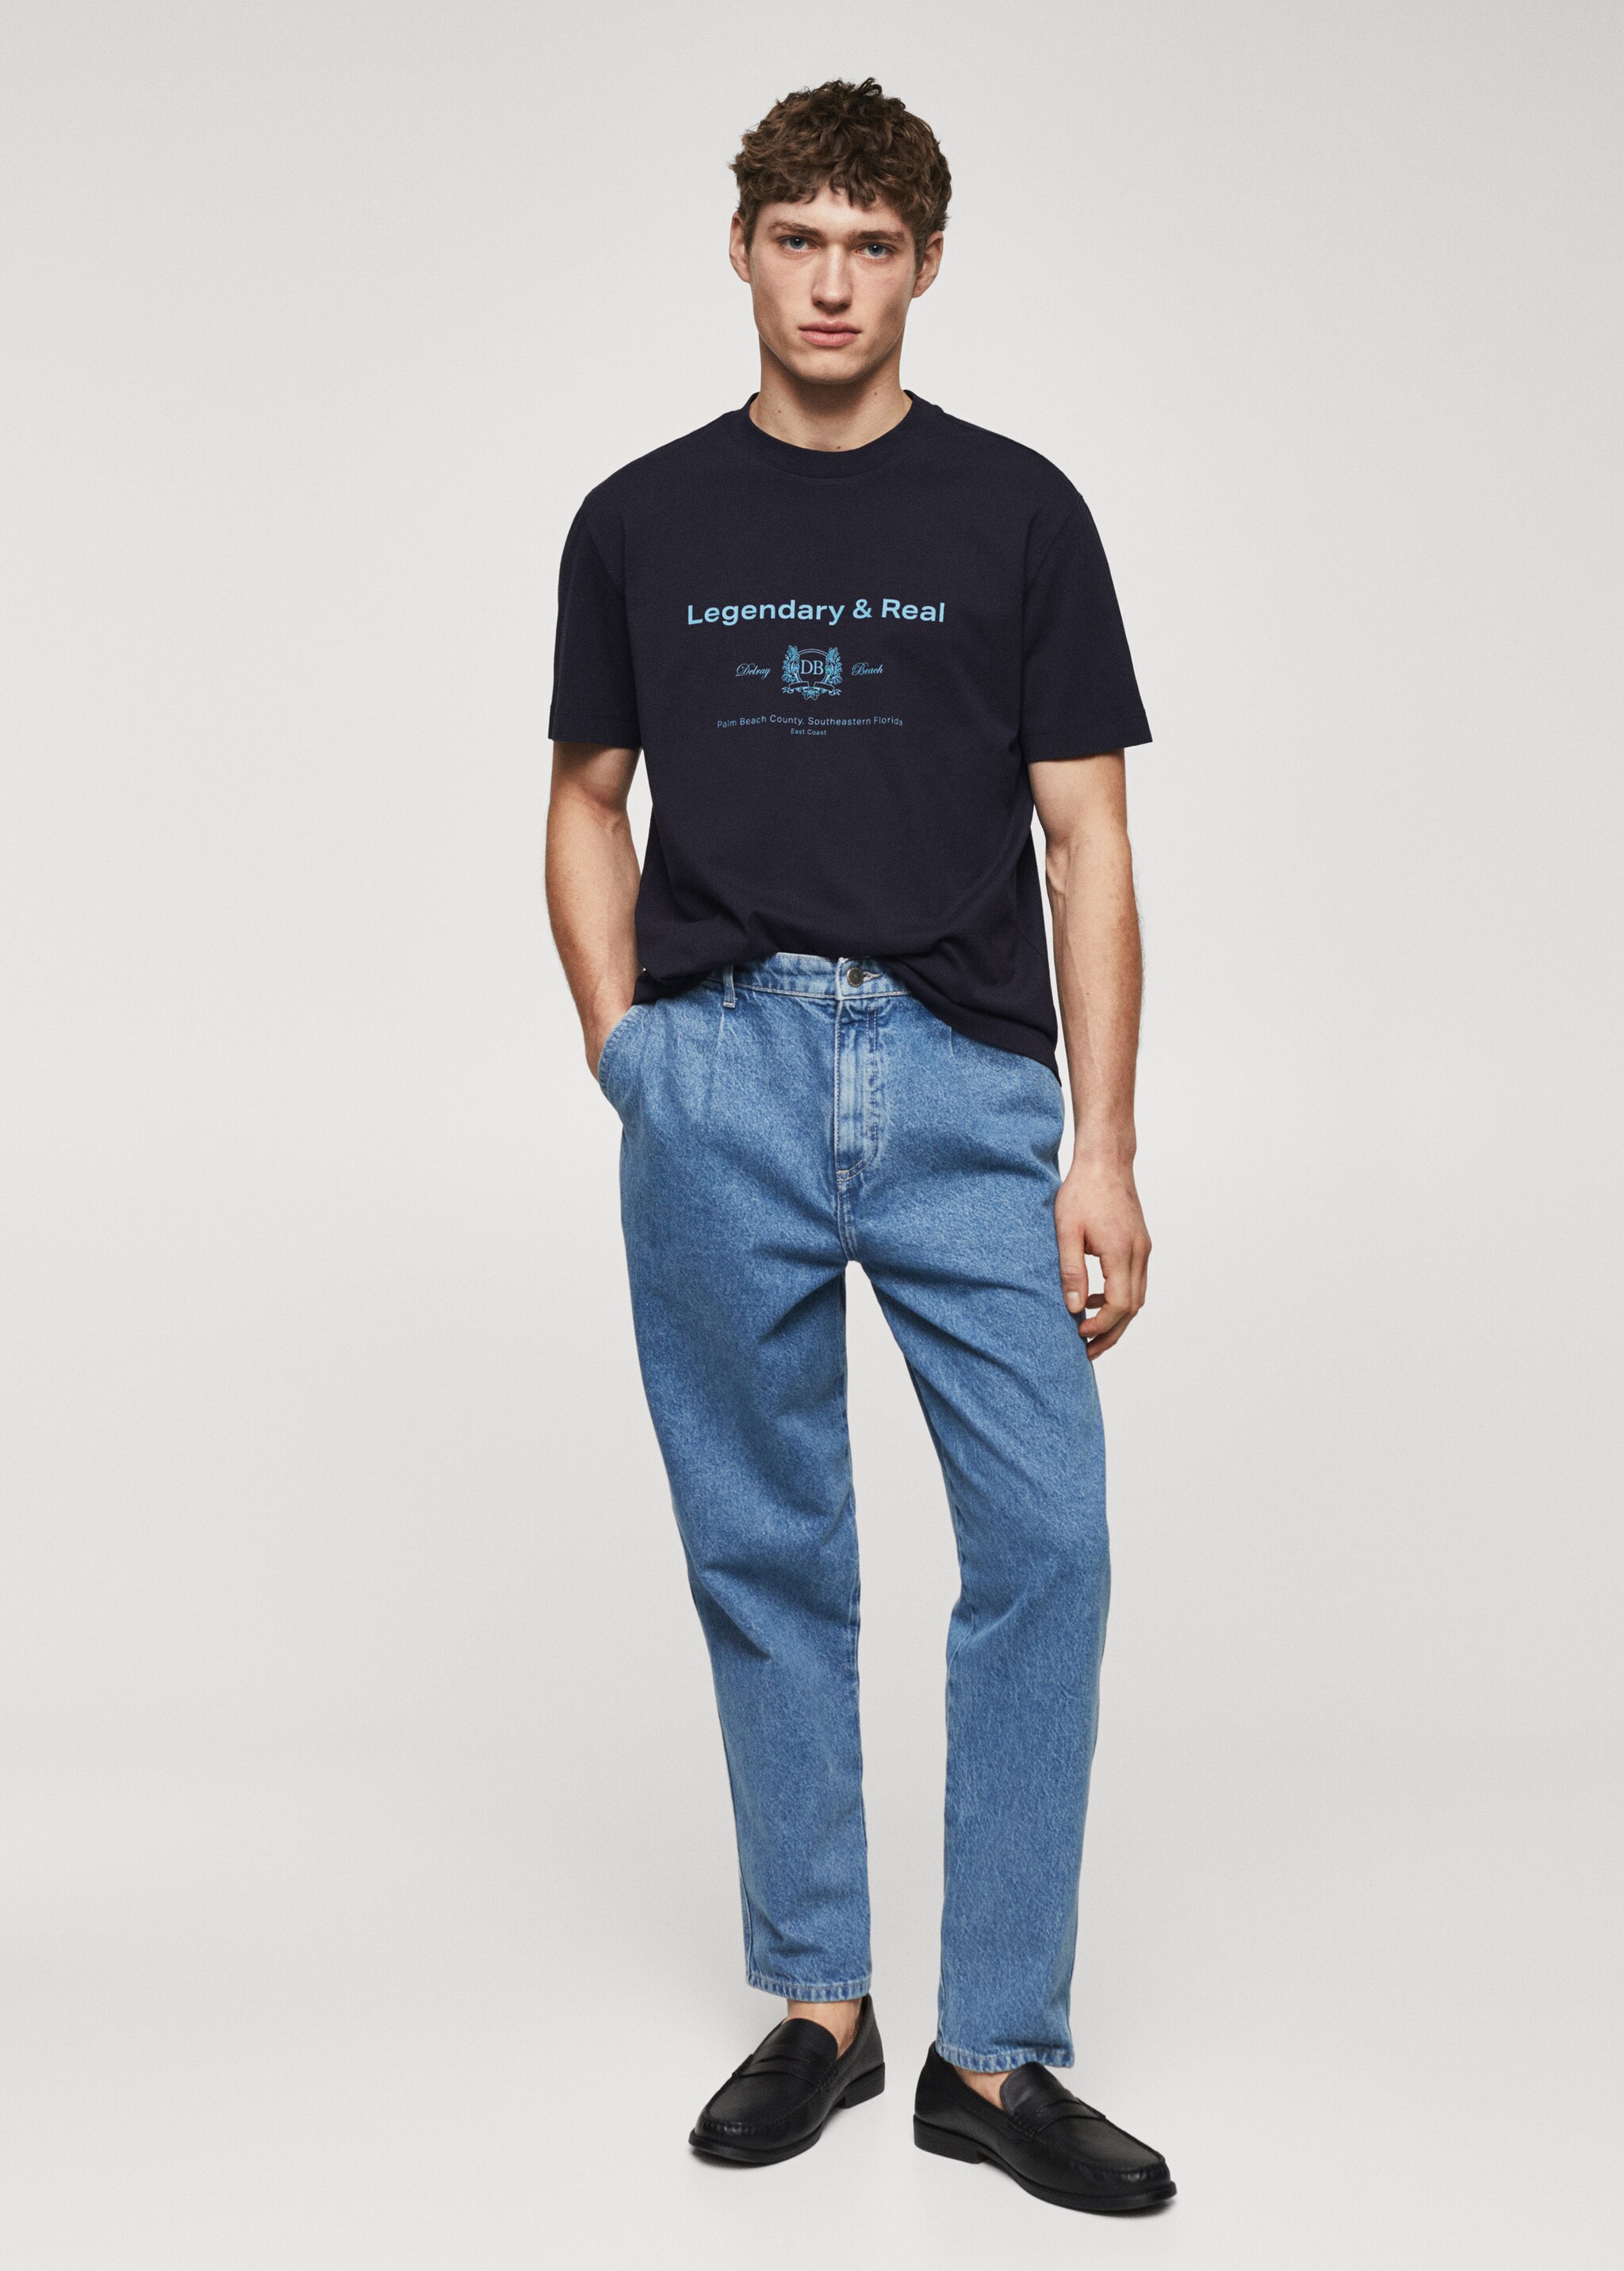 T-Shirt aus 100 % Baumwolle mit Schriftzug - Allgemeine Ansicht